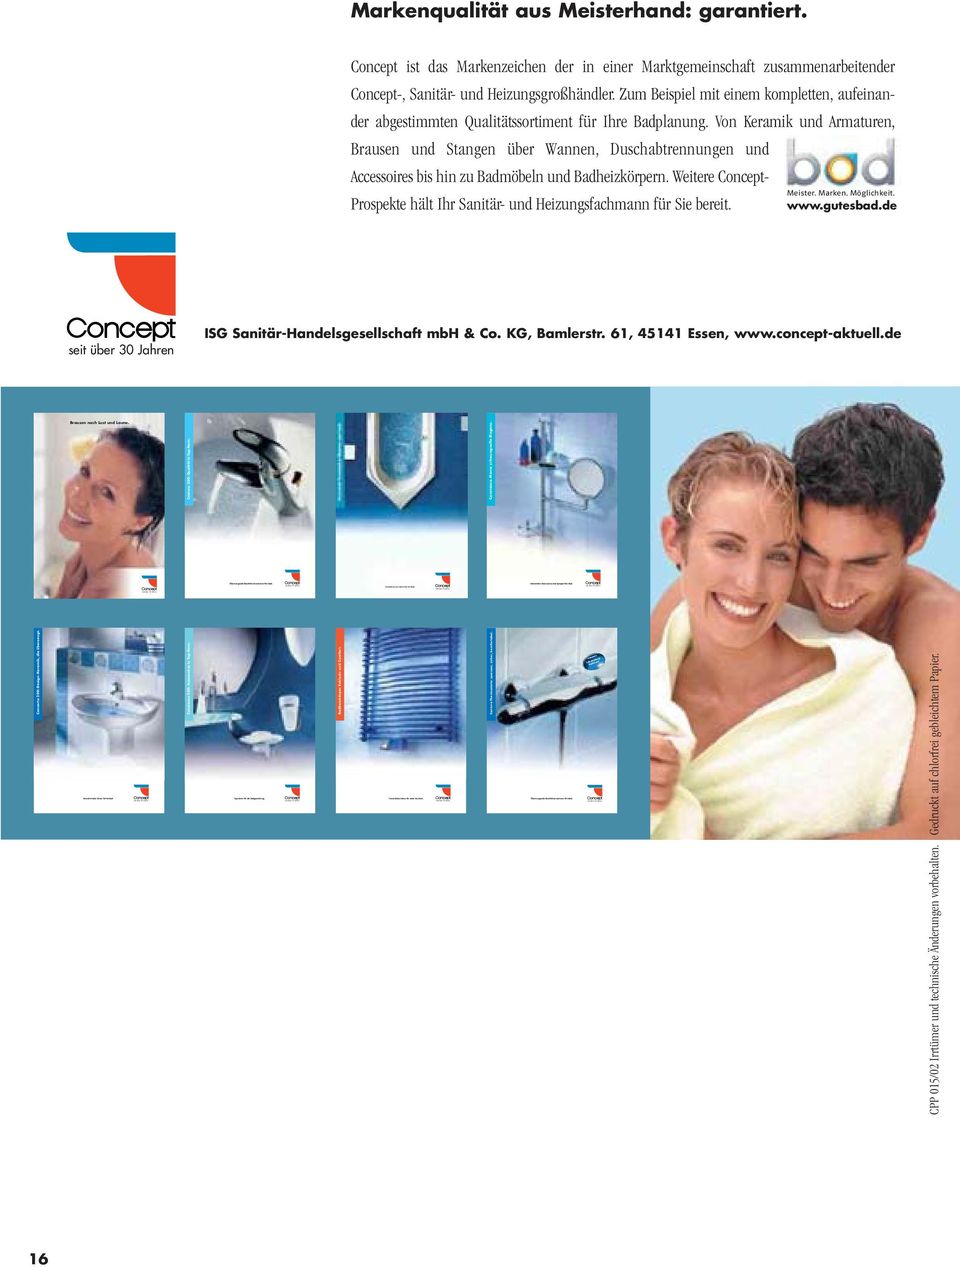 Concept ist das Markenzeichen der in einer Marktgemeinschaft zusammenarbeitender Concept-, Sanitär- und Heizungsgroßhändler.